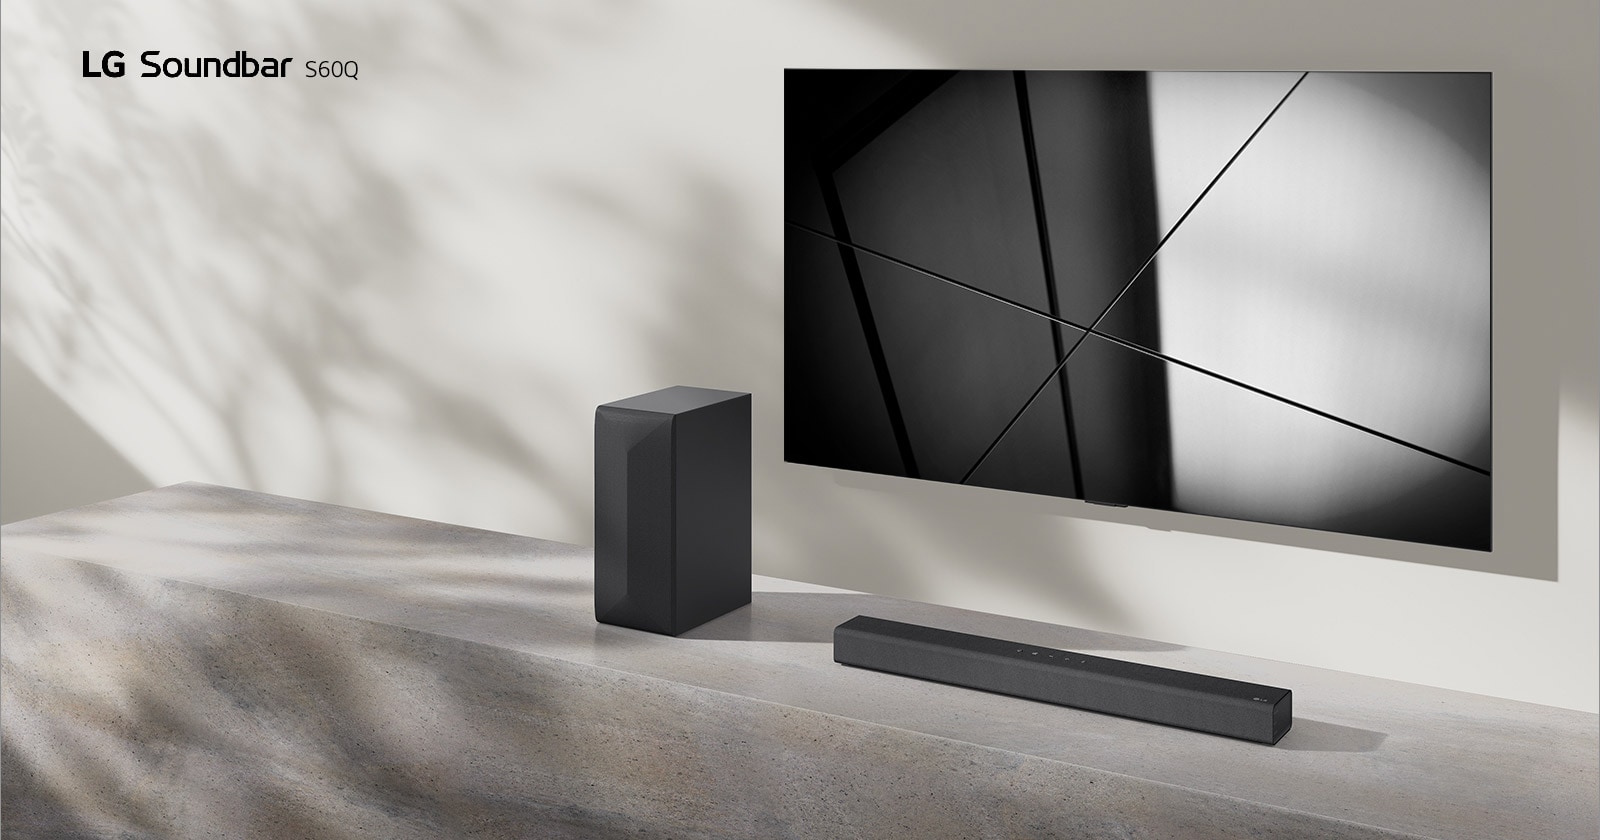 LG Sound Bar S60Q i LG TV postavljeni su zajedno u dnevnoj sobi. Televizor je uključen i prikazuje geometrijsku sliku.